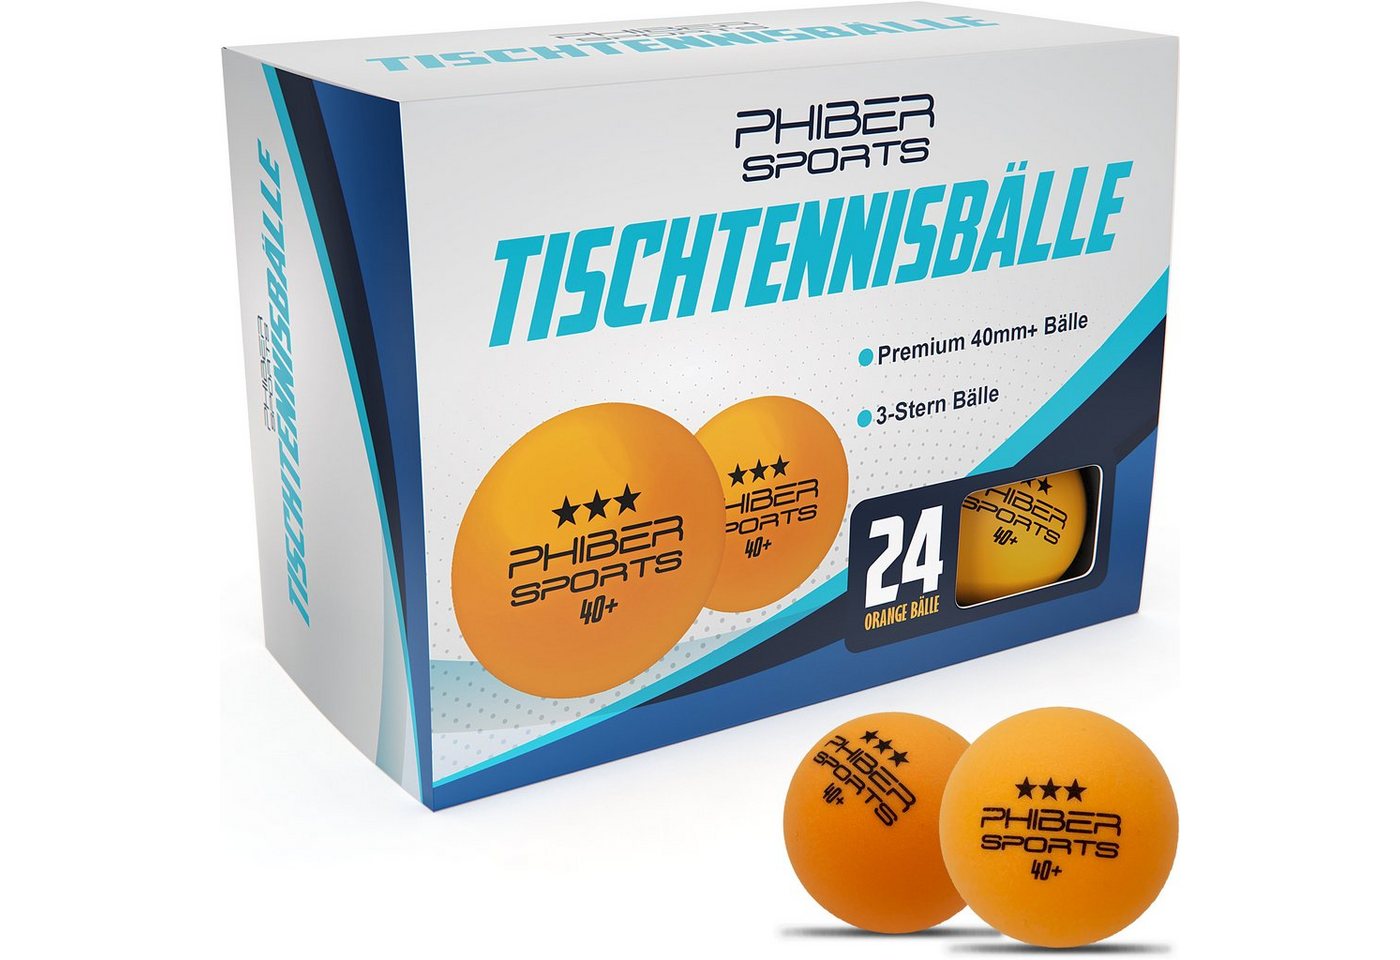 PHIBER-SPORTS Tischtennisball Orange 3 Stern [24 Stück] - Ideal für Anfänger, Familien und Profis (Set, 24 orange 3-Stern Tischtennisbälle), Nach Wettbewerbsrichtlinien produziert von PHIBER-SPORTS